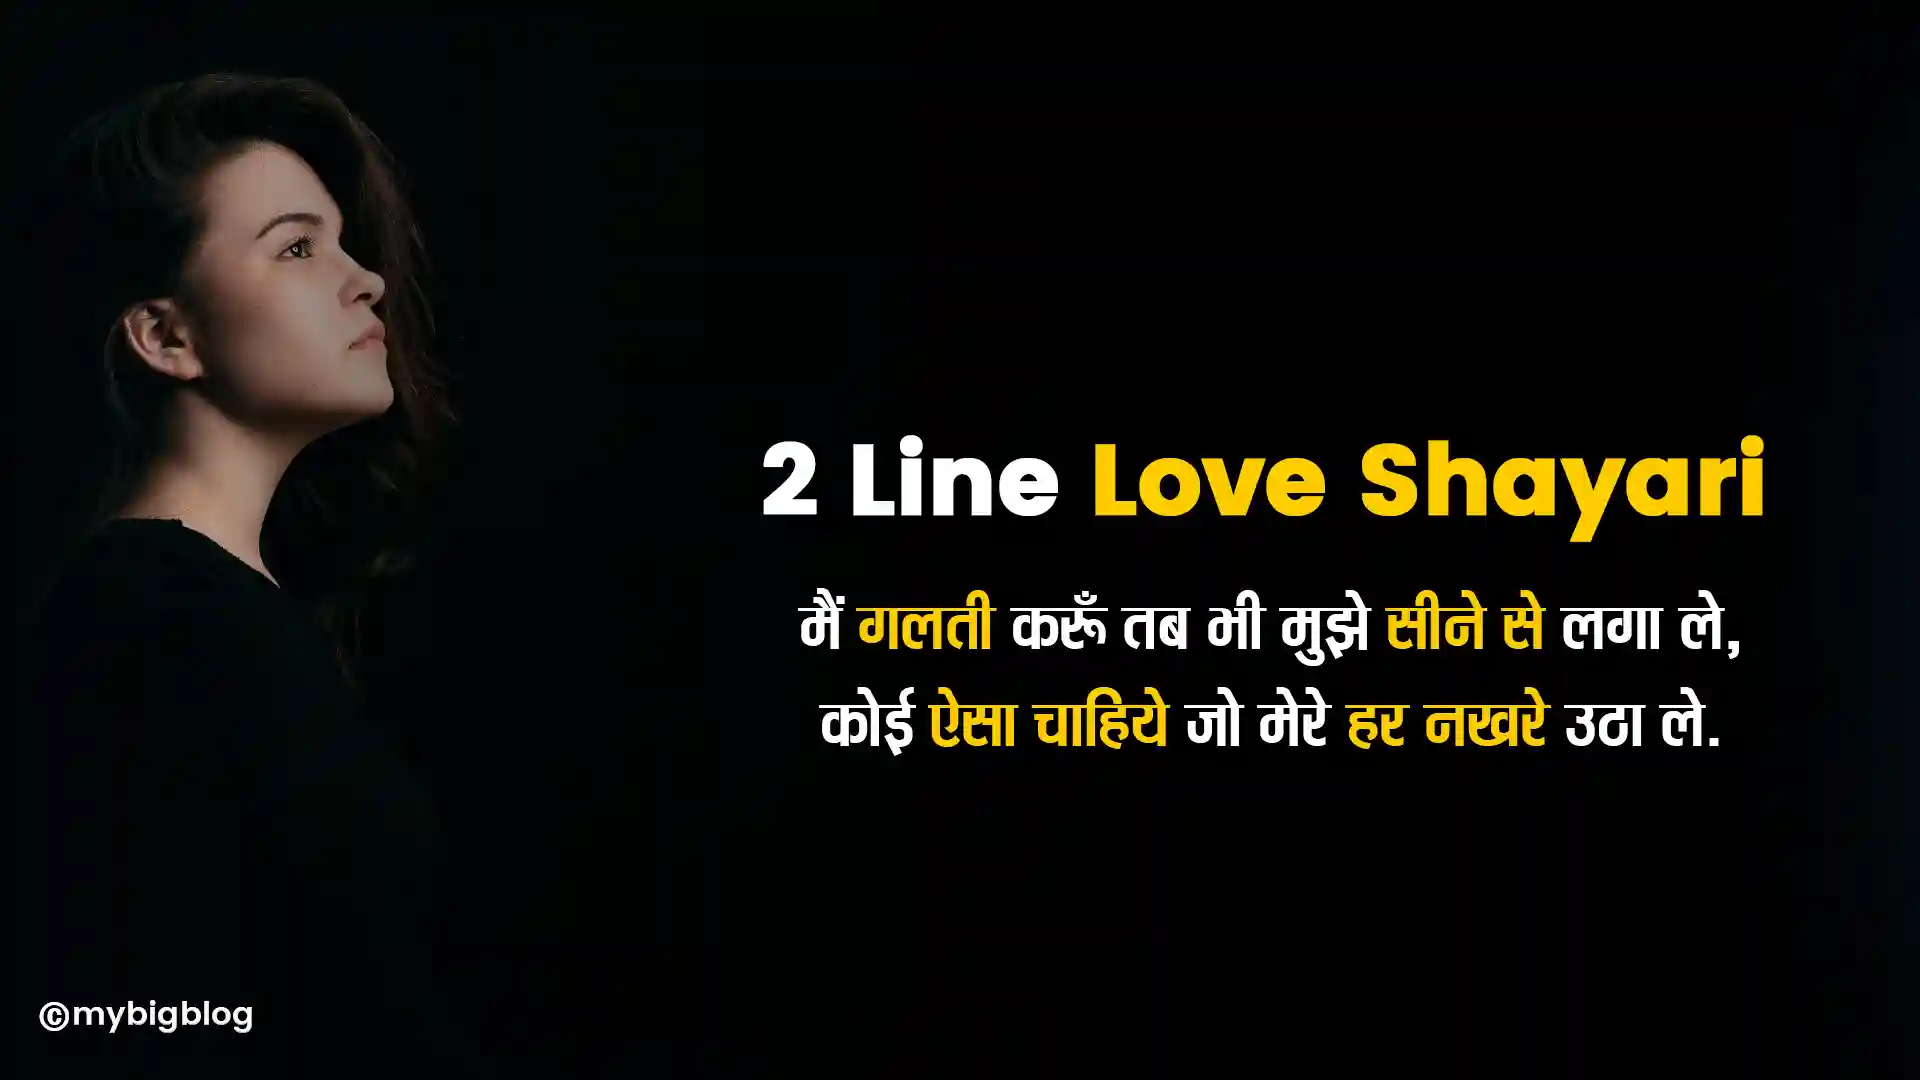 2 Line Love Shayari In Hindi